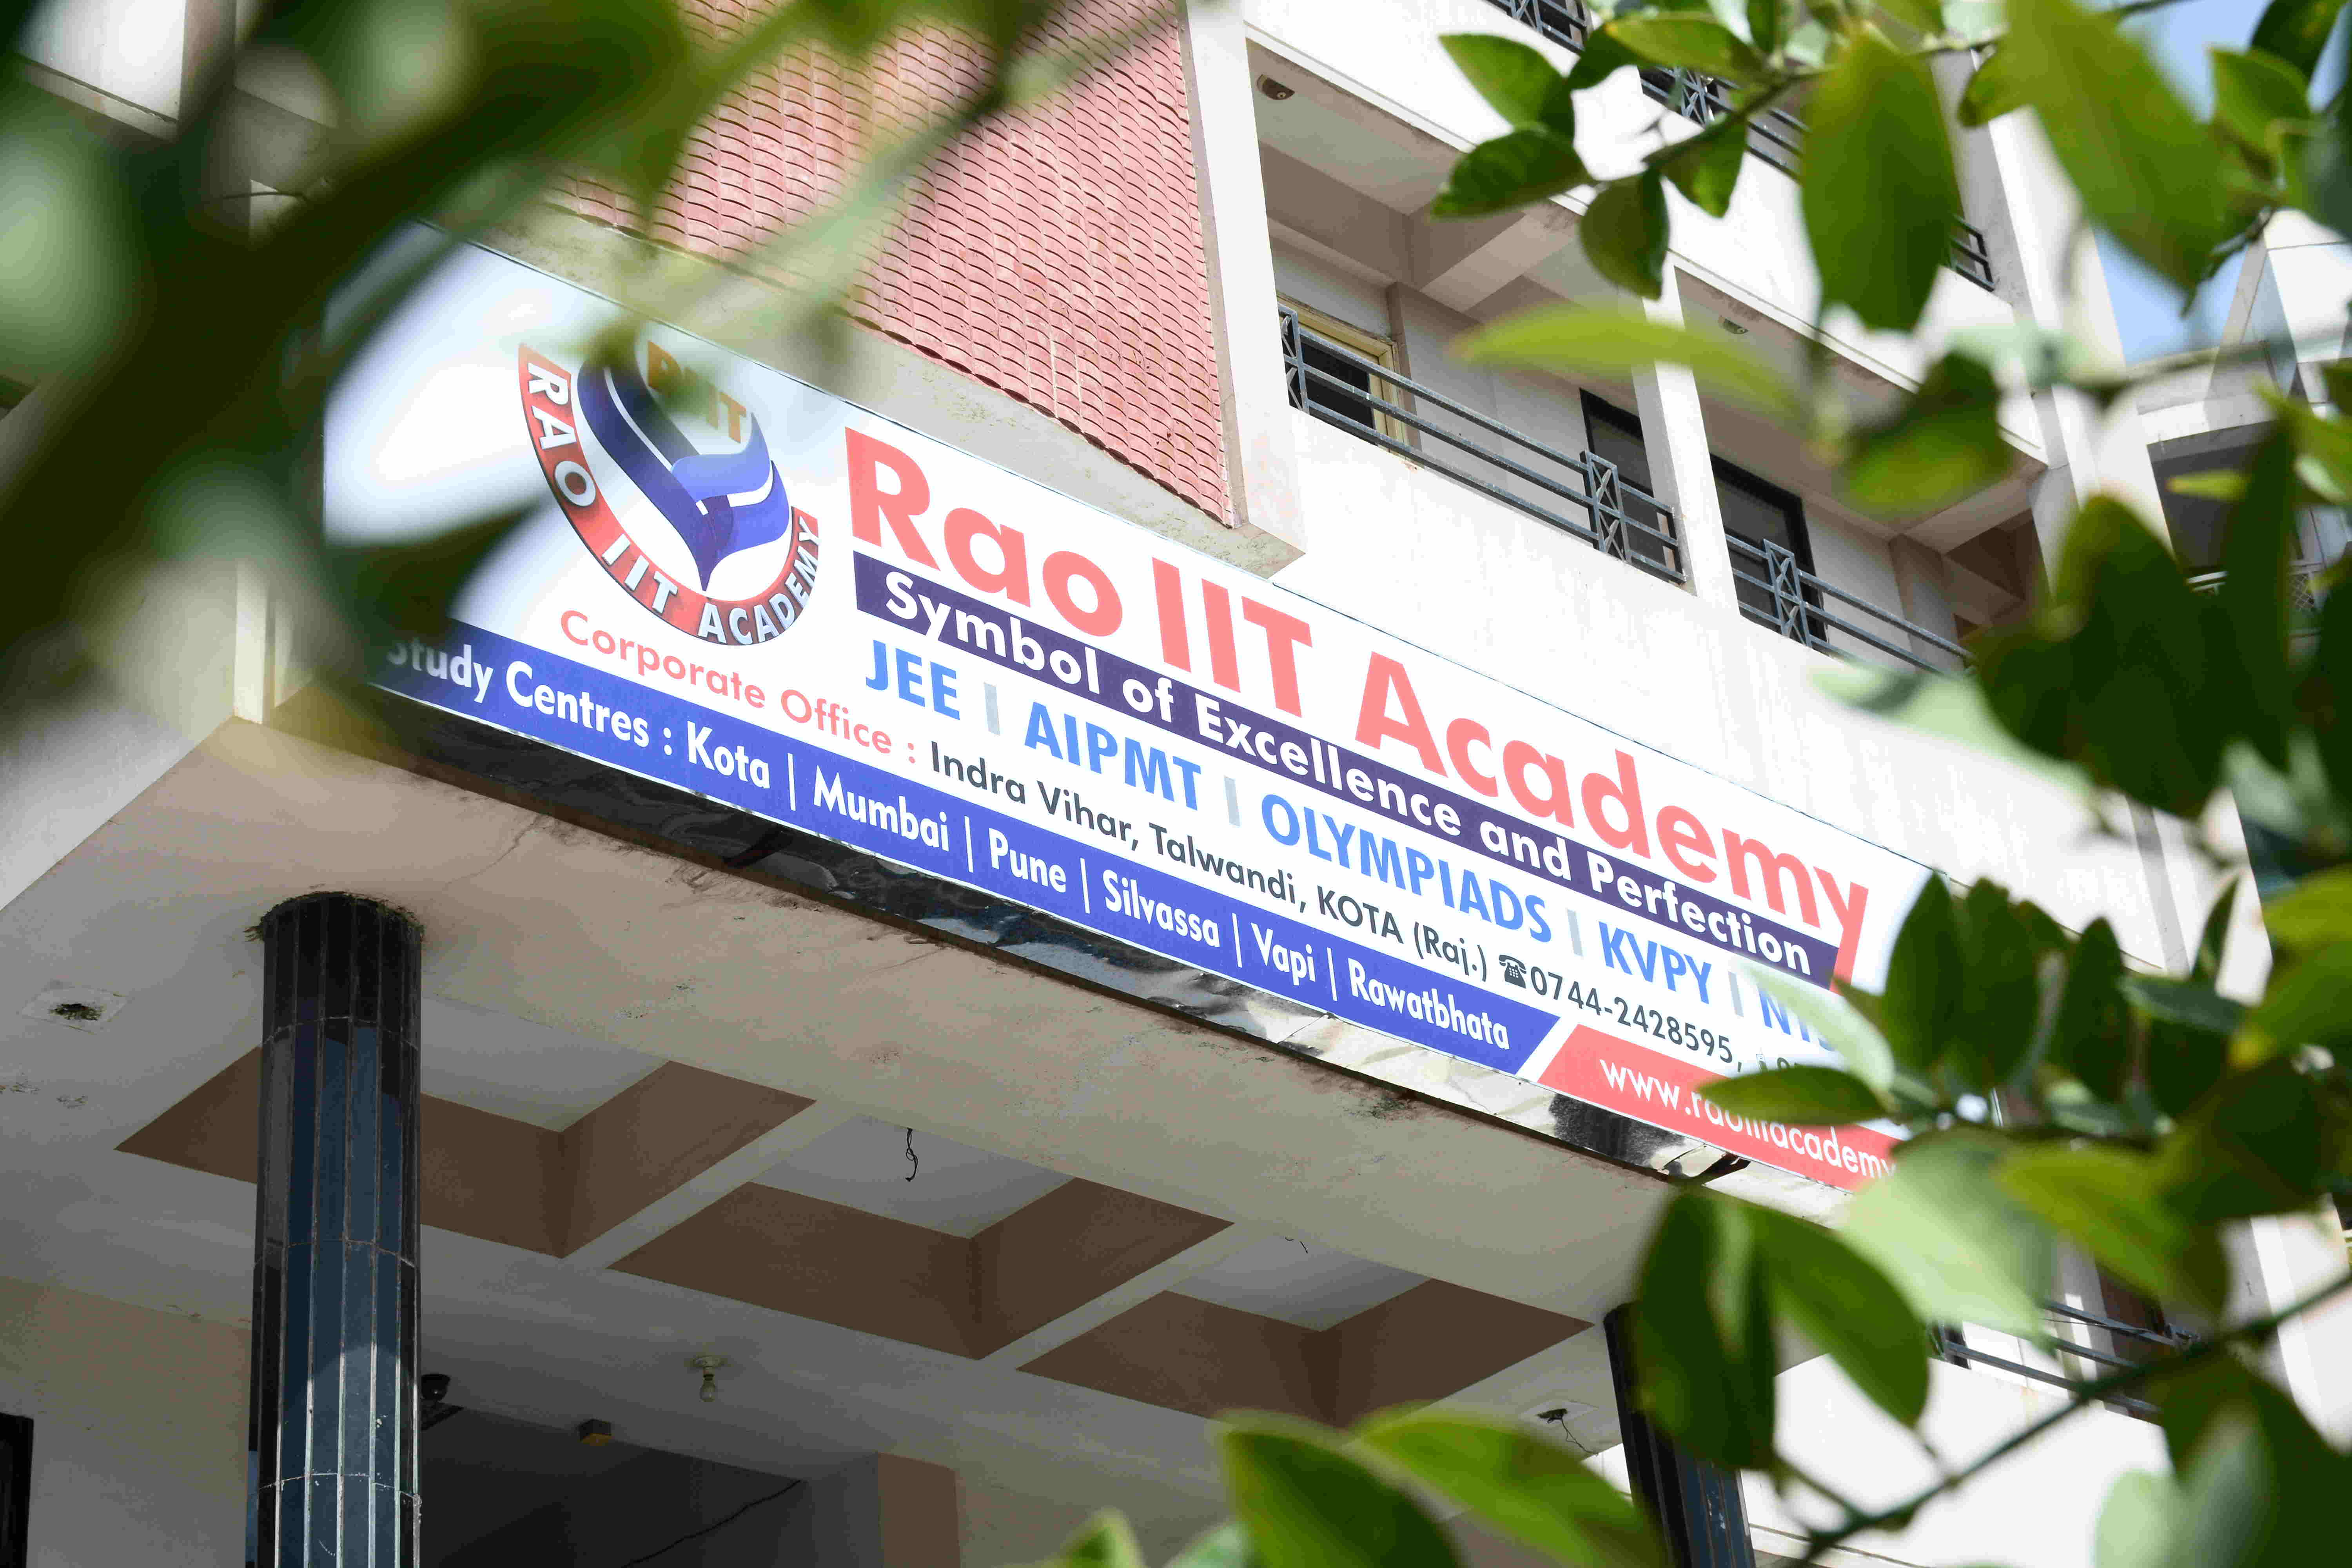 Rao IIT Academy IIT JEE & medical coaching centre, Kota